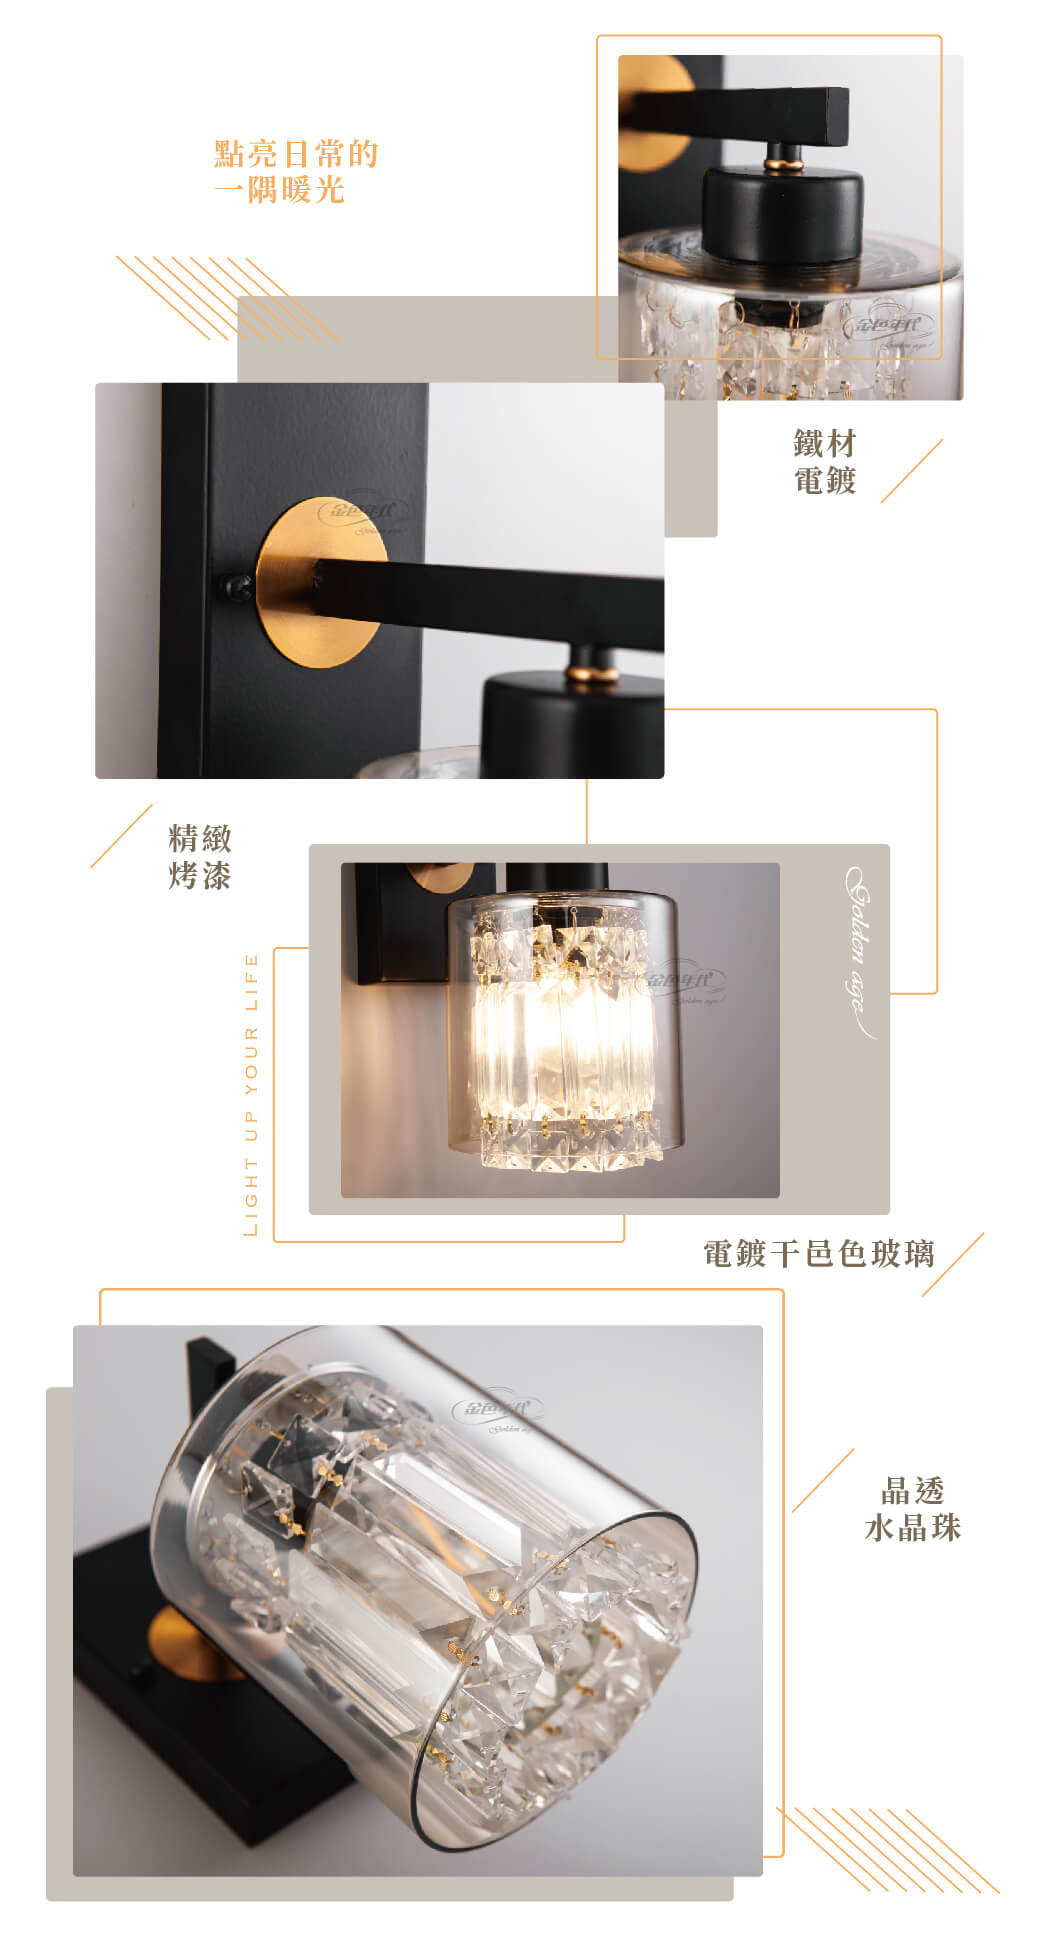 GA10官網圖文-琥珀色水晶玻璃壁燈_02